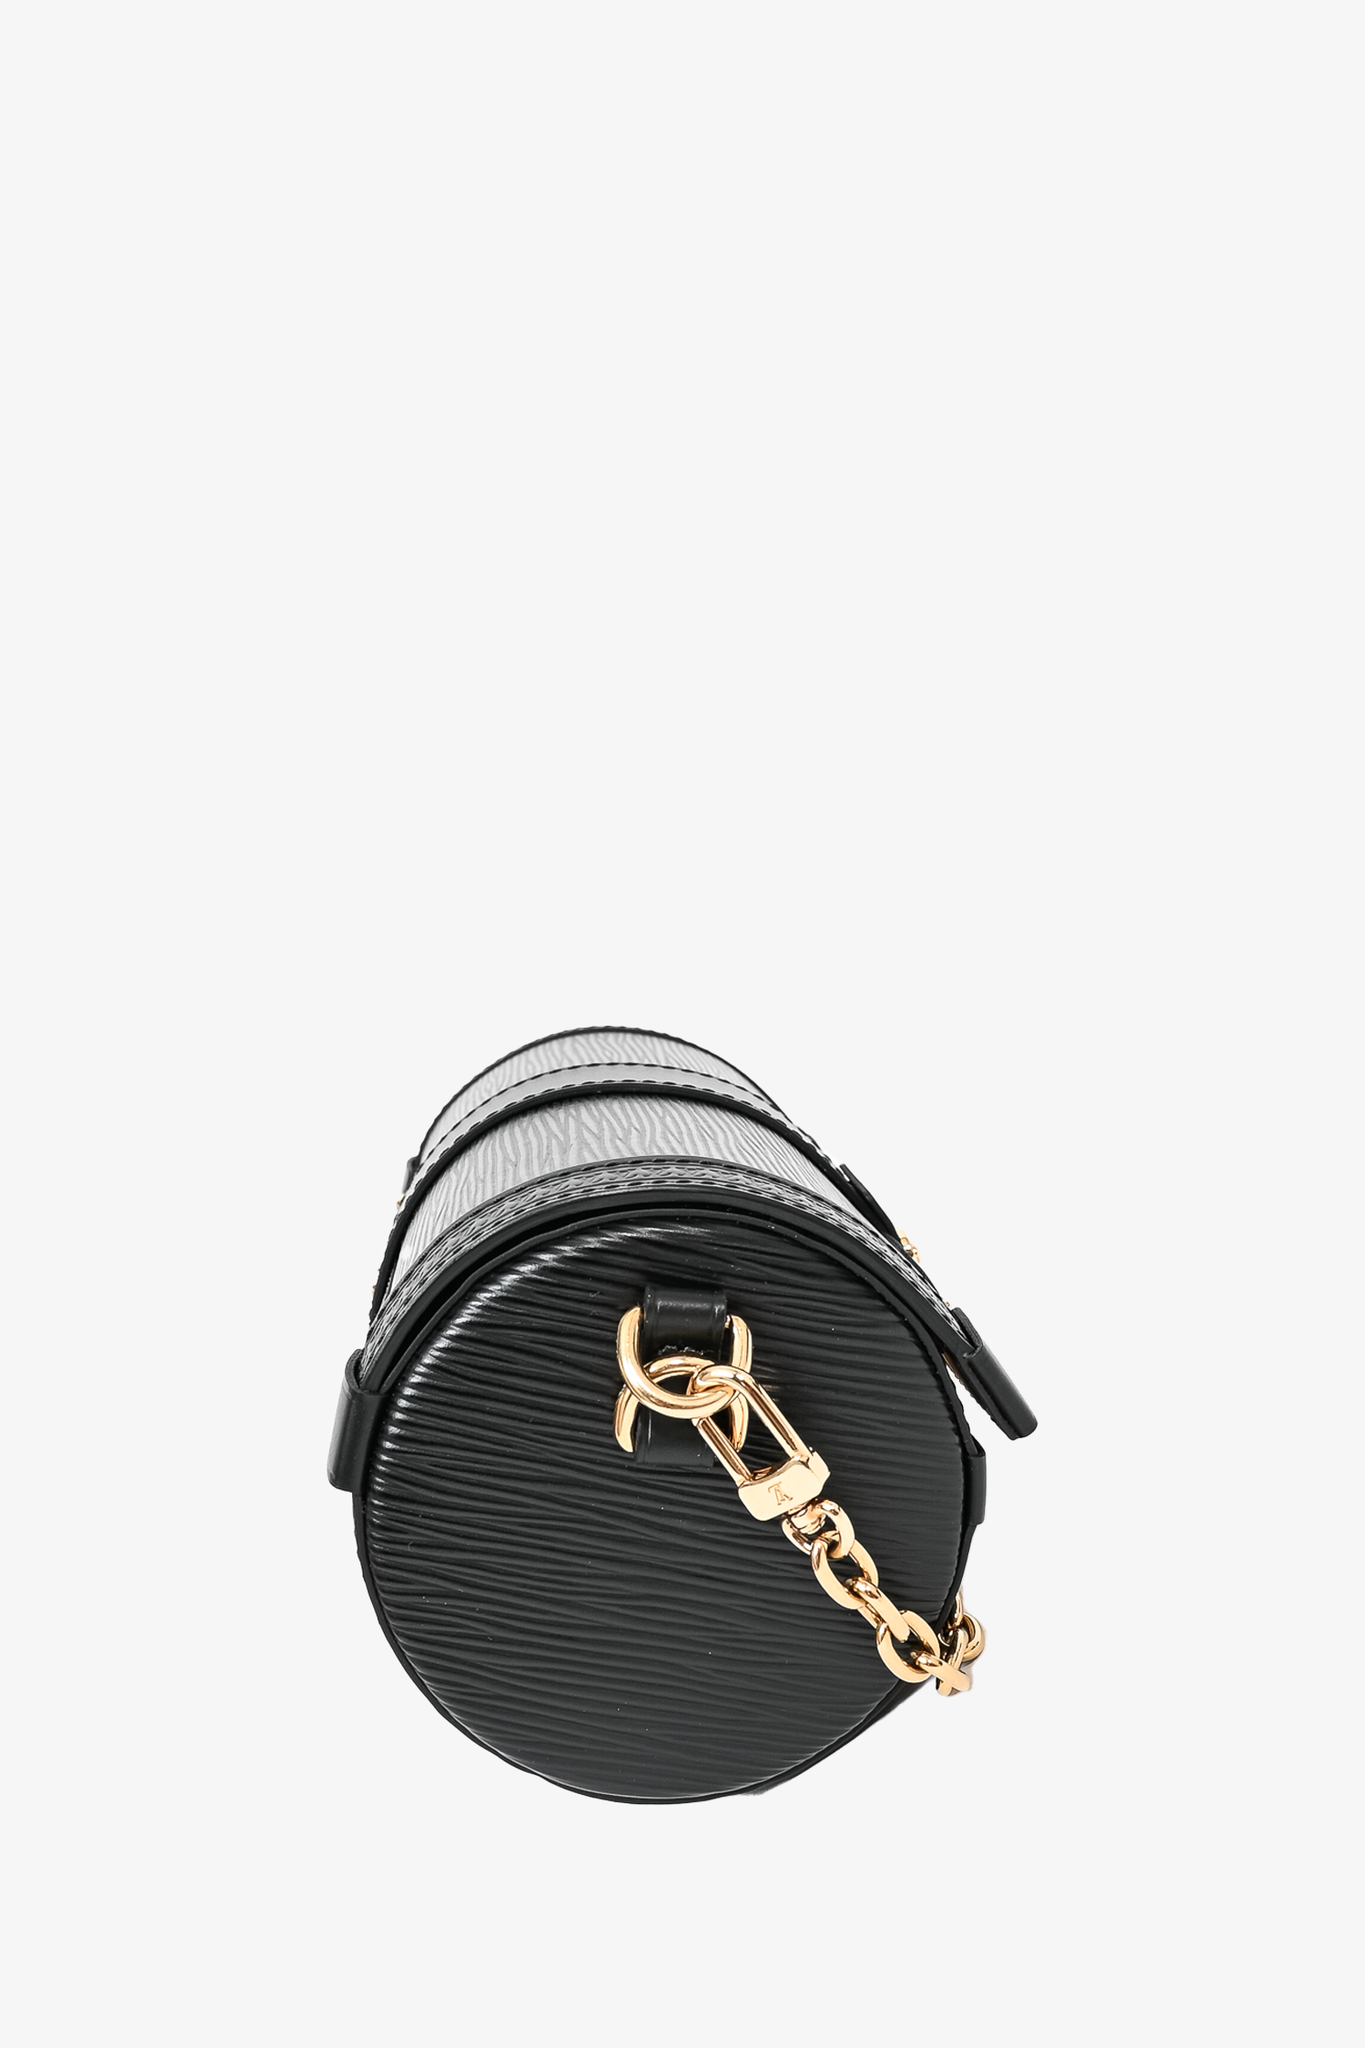 Louis Vuitton Papillon Trunk Bag Epi Leather Black 2388843